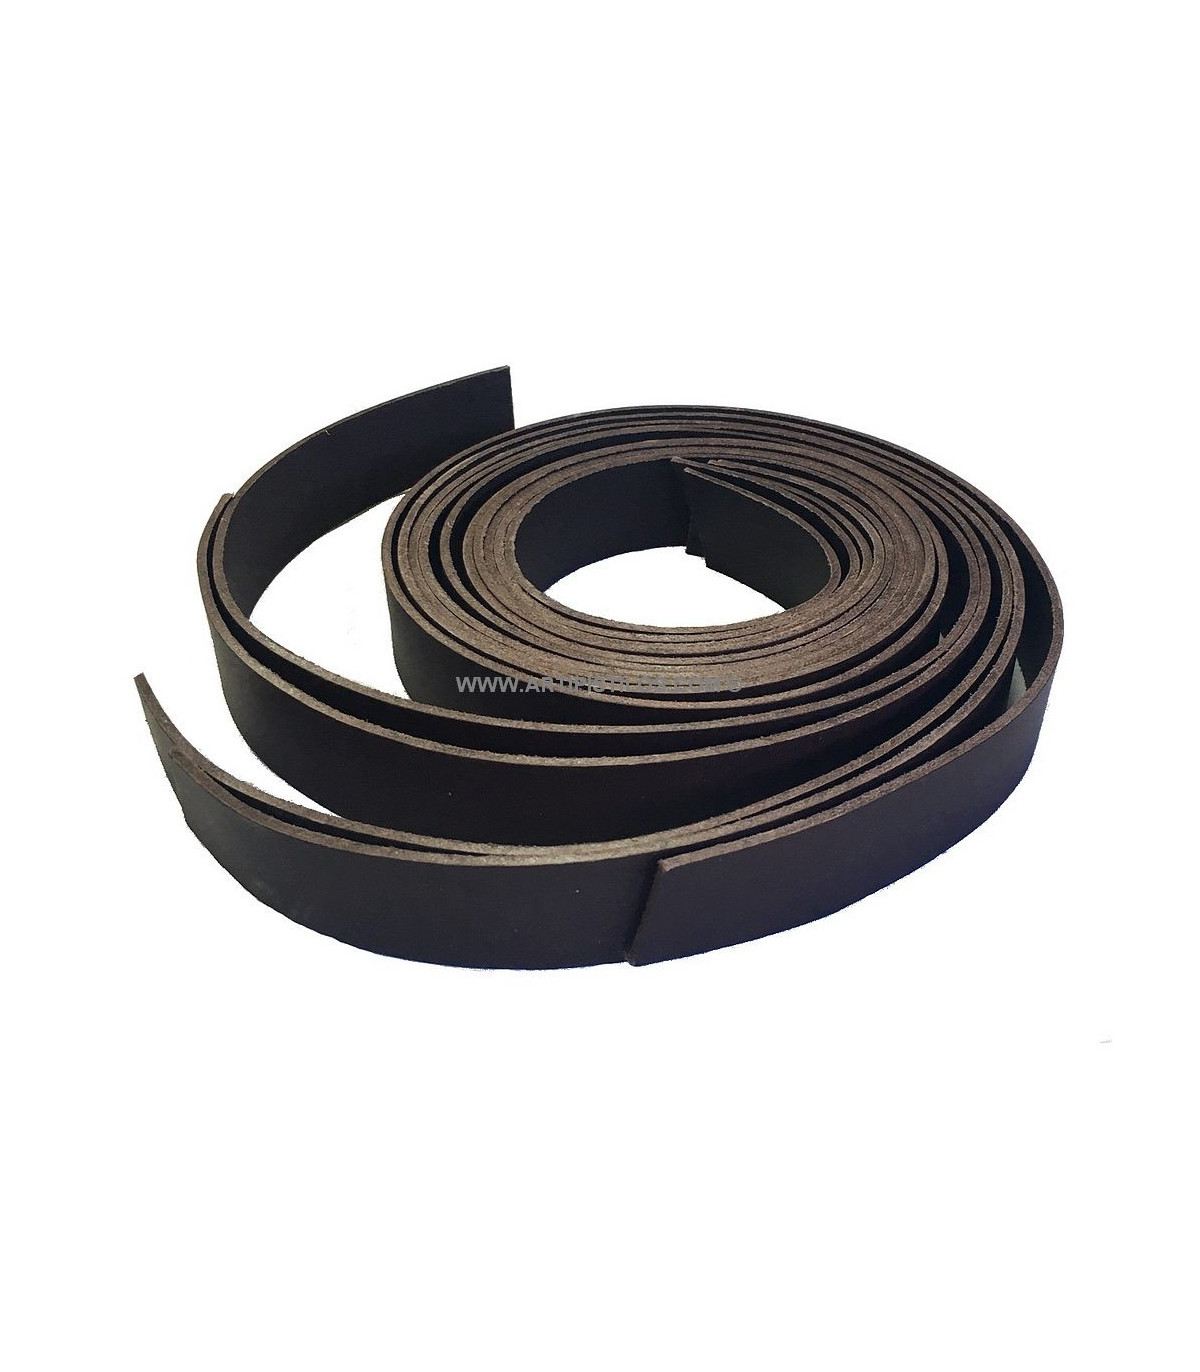 CUERO PARA CINTURONES - Goma Elástica & Hebillas Para Cinturones - Materiales para tocados, Telas calidad, Flecos de